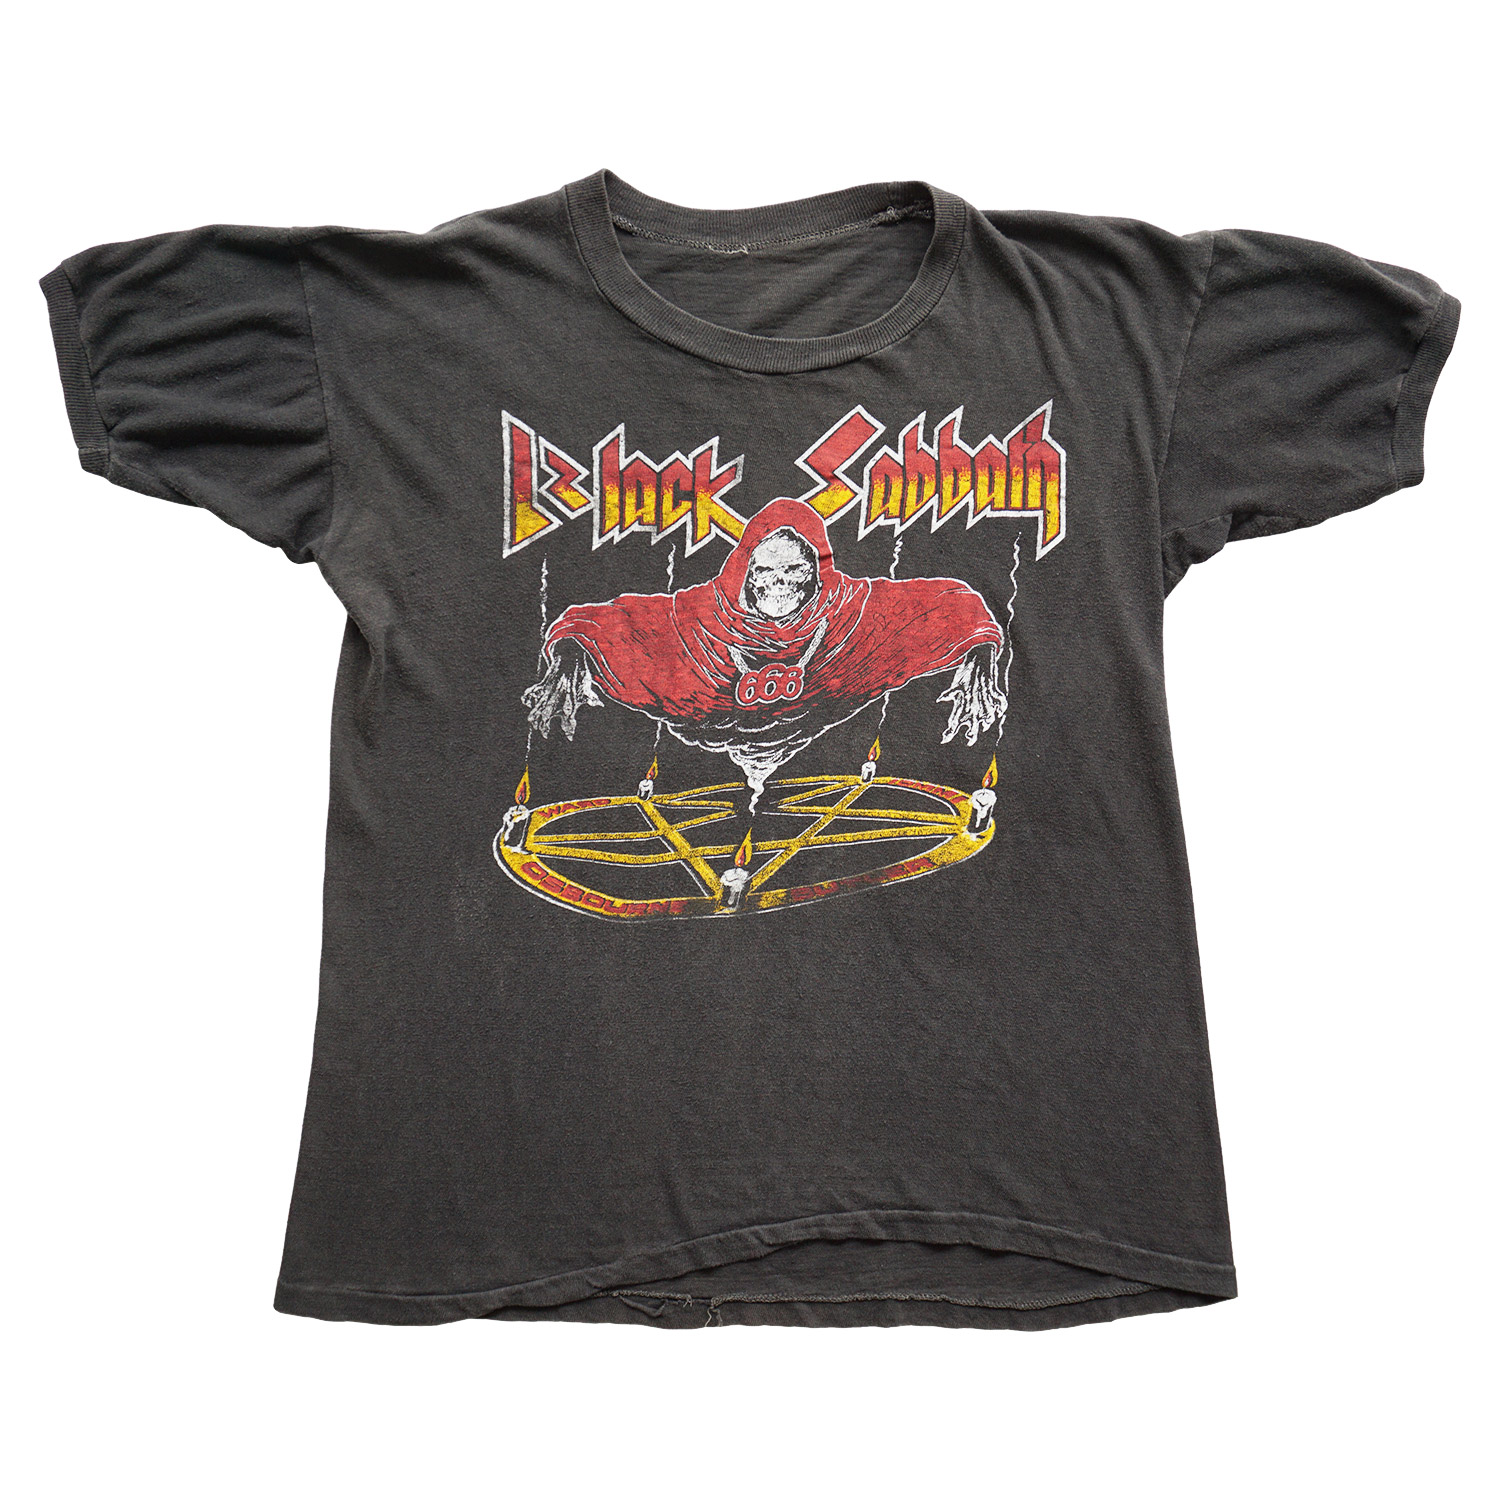 Vintage 1978 Black Sabbath US Tour T-shirt, Front